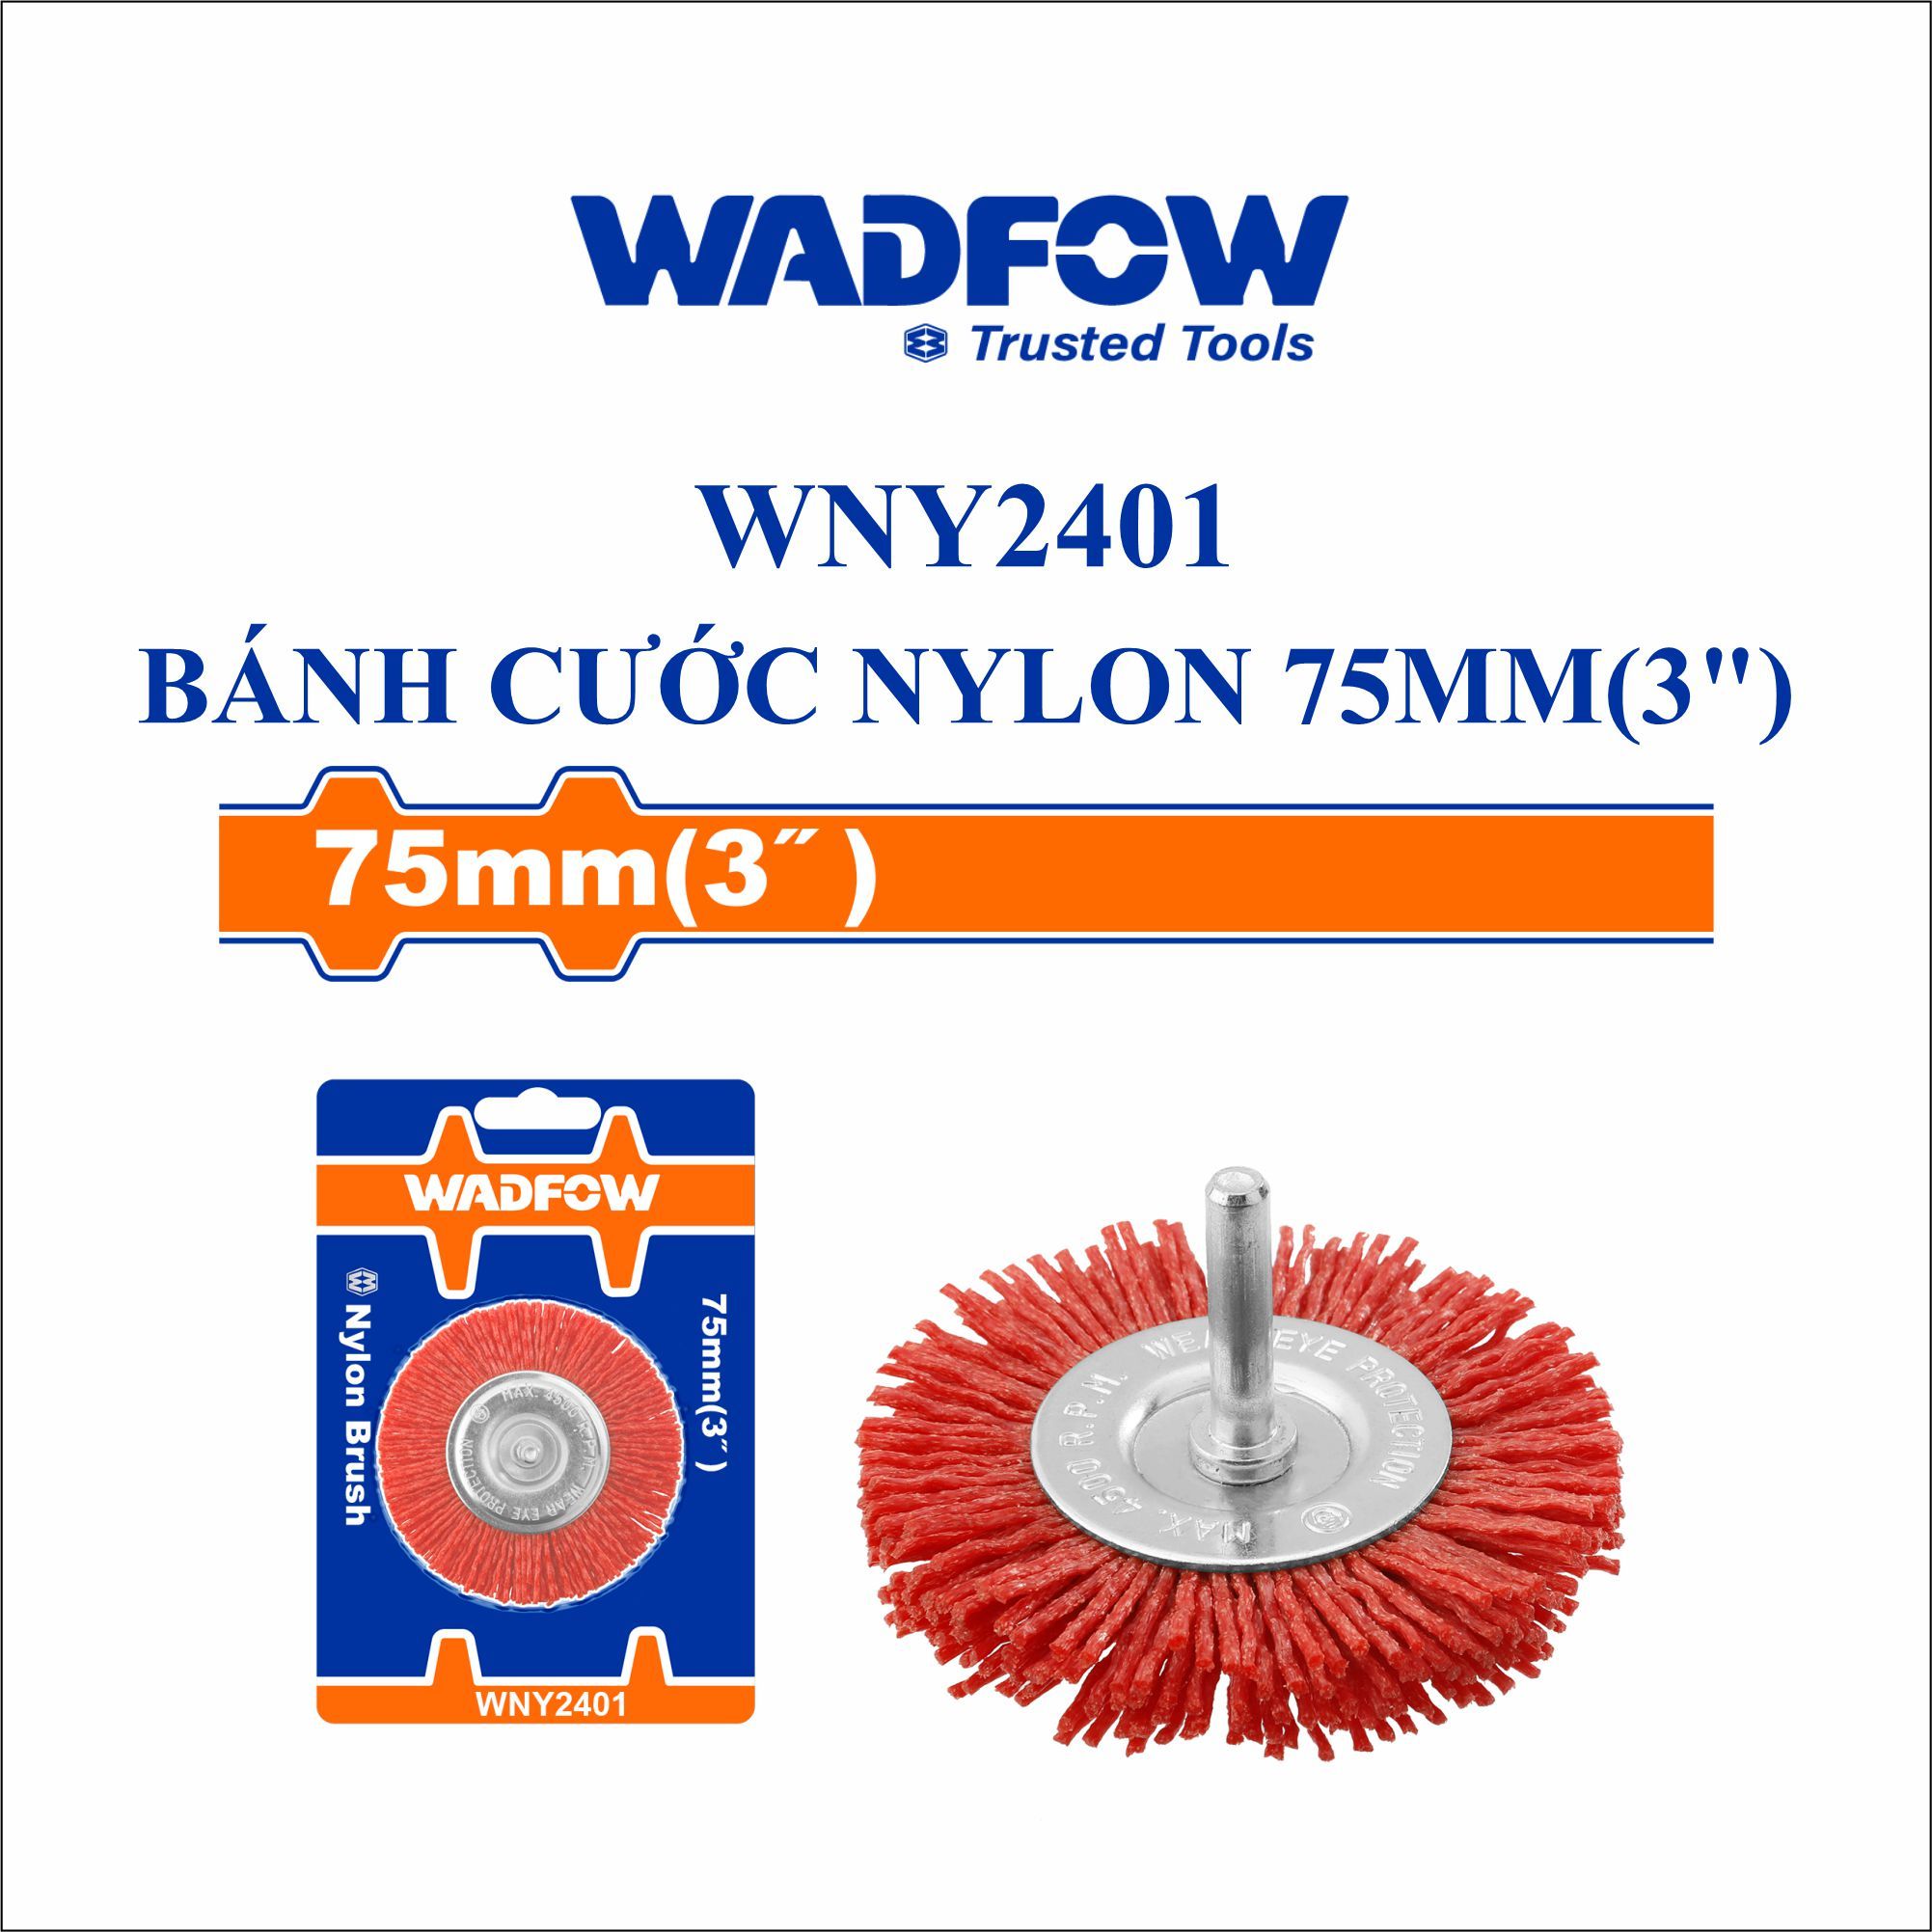  Bánh cước nylon 75mm WADFOW WNY2401 